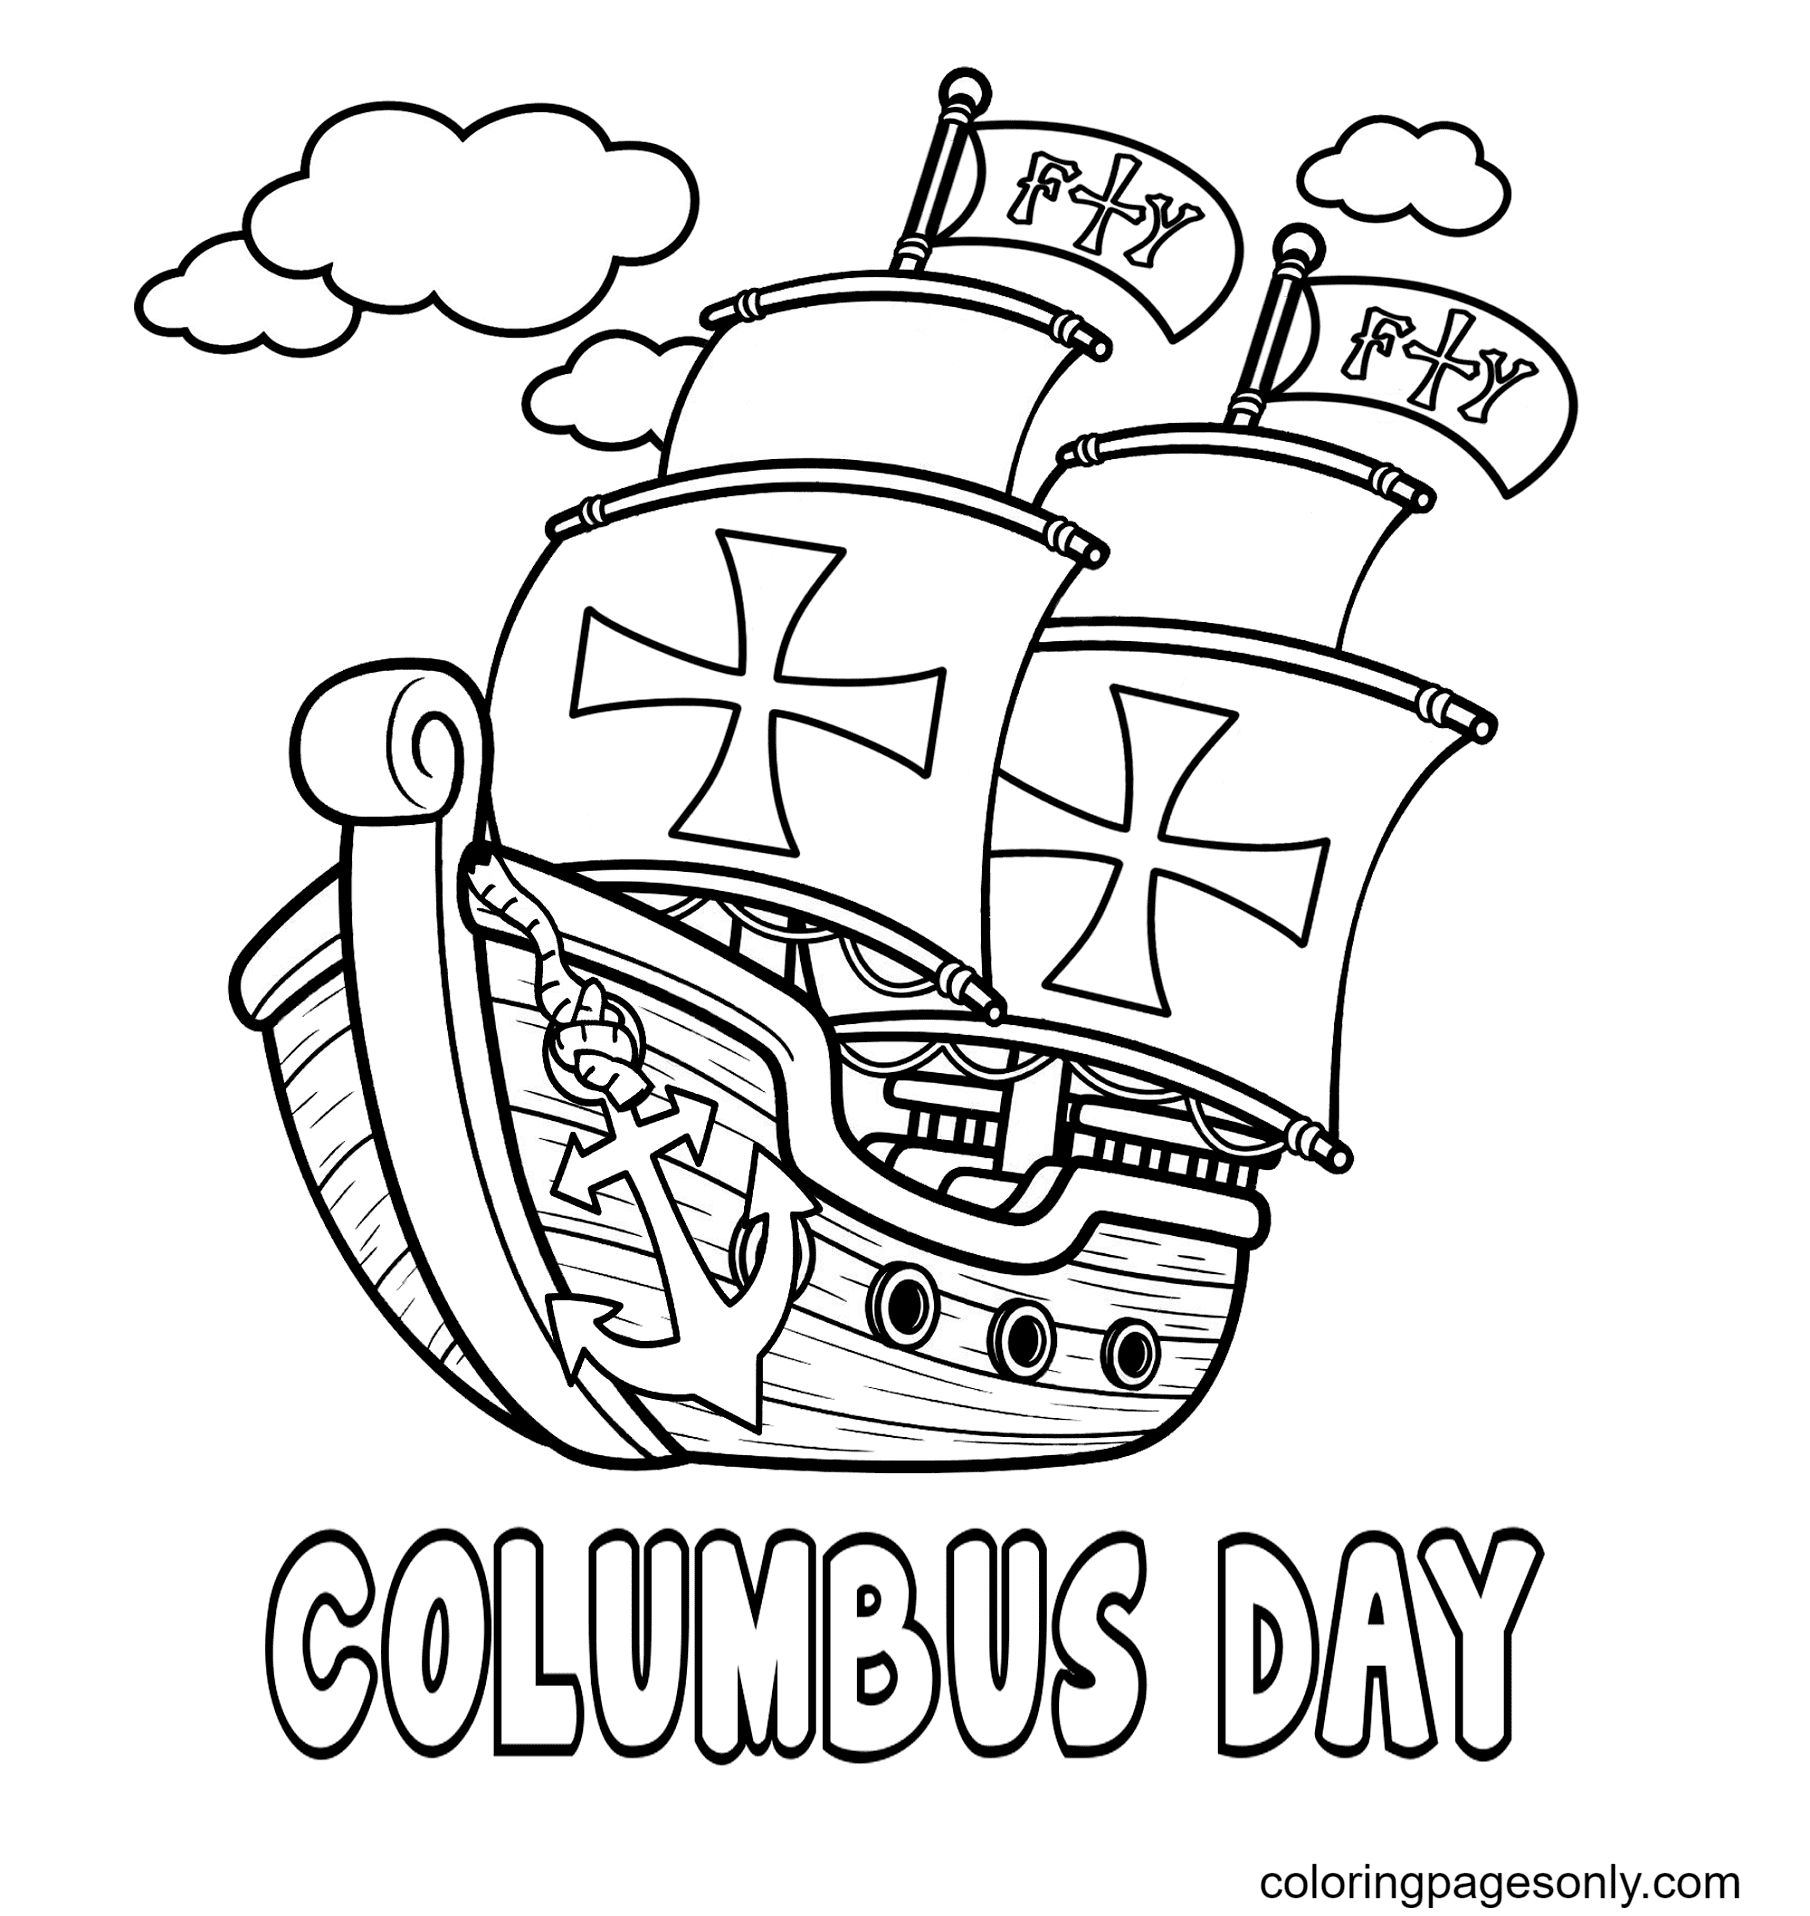 Бесплатная распечатка Христофора Колумба из Дня Колумба